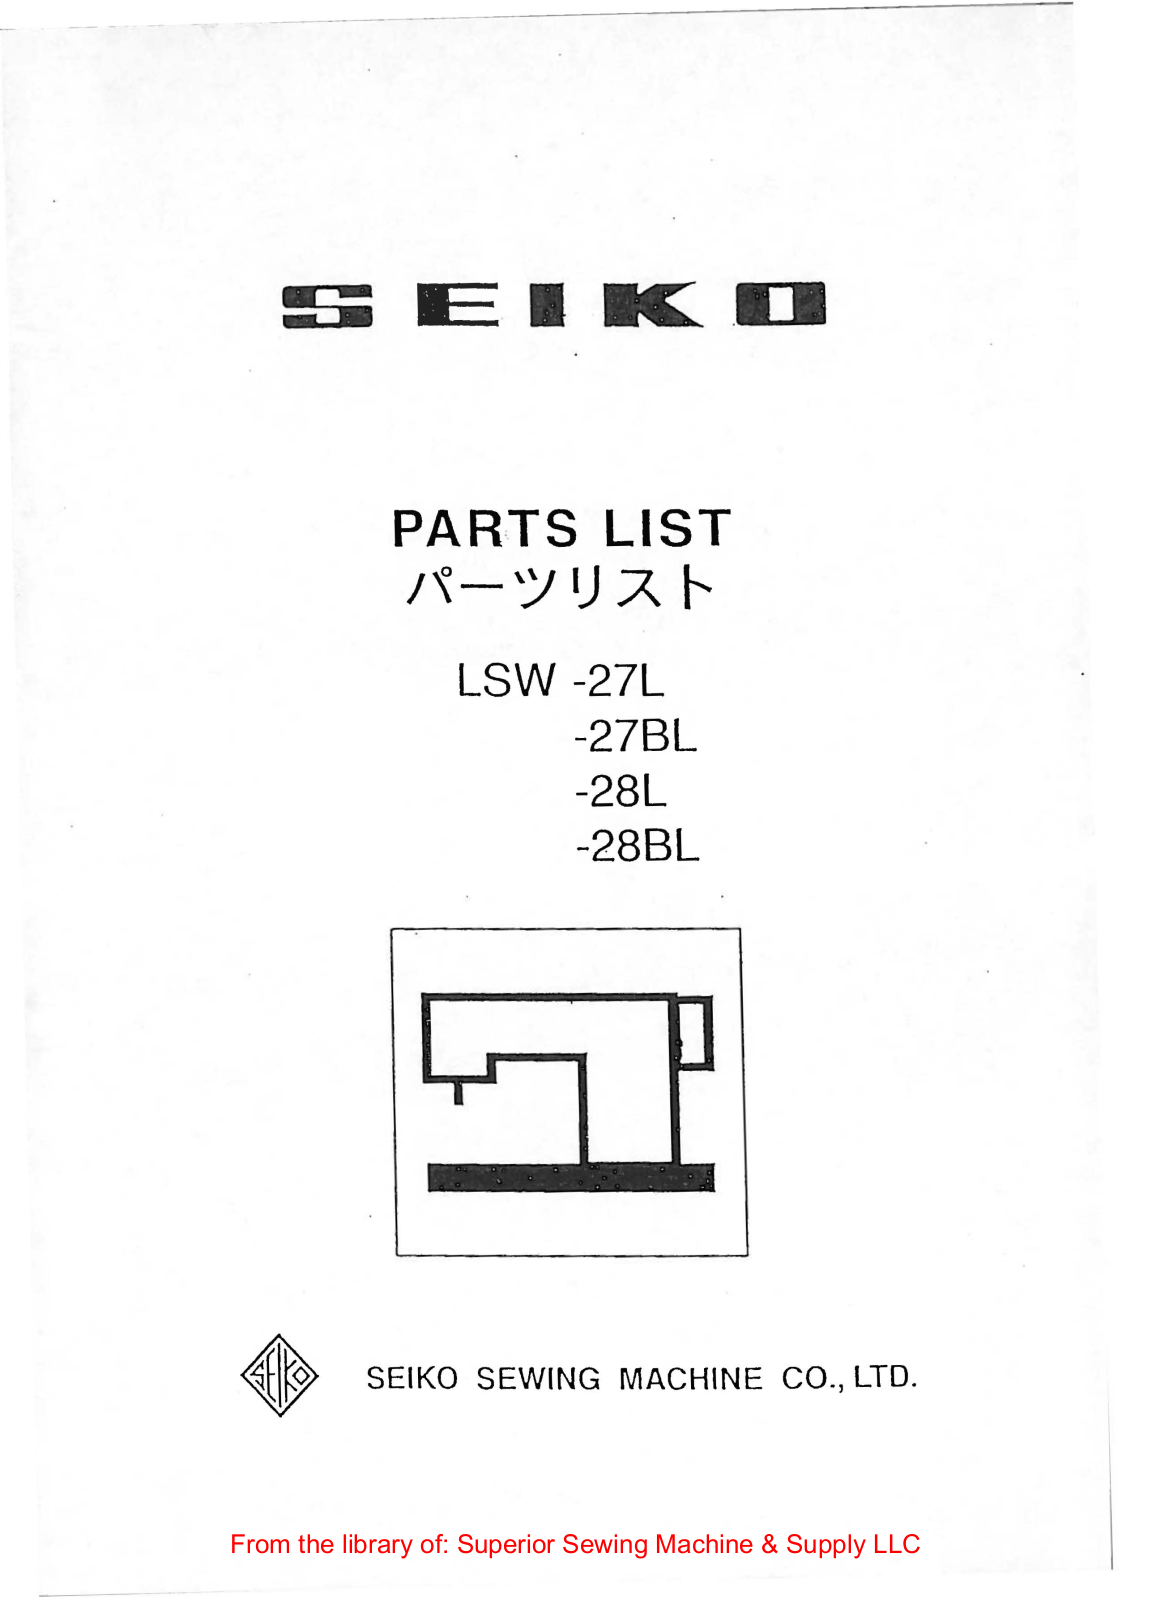 Seiko LSW-27L, LSW-28L, LSW-28BL Manual